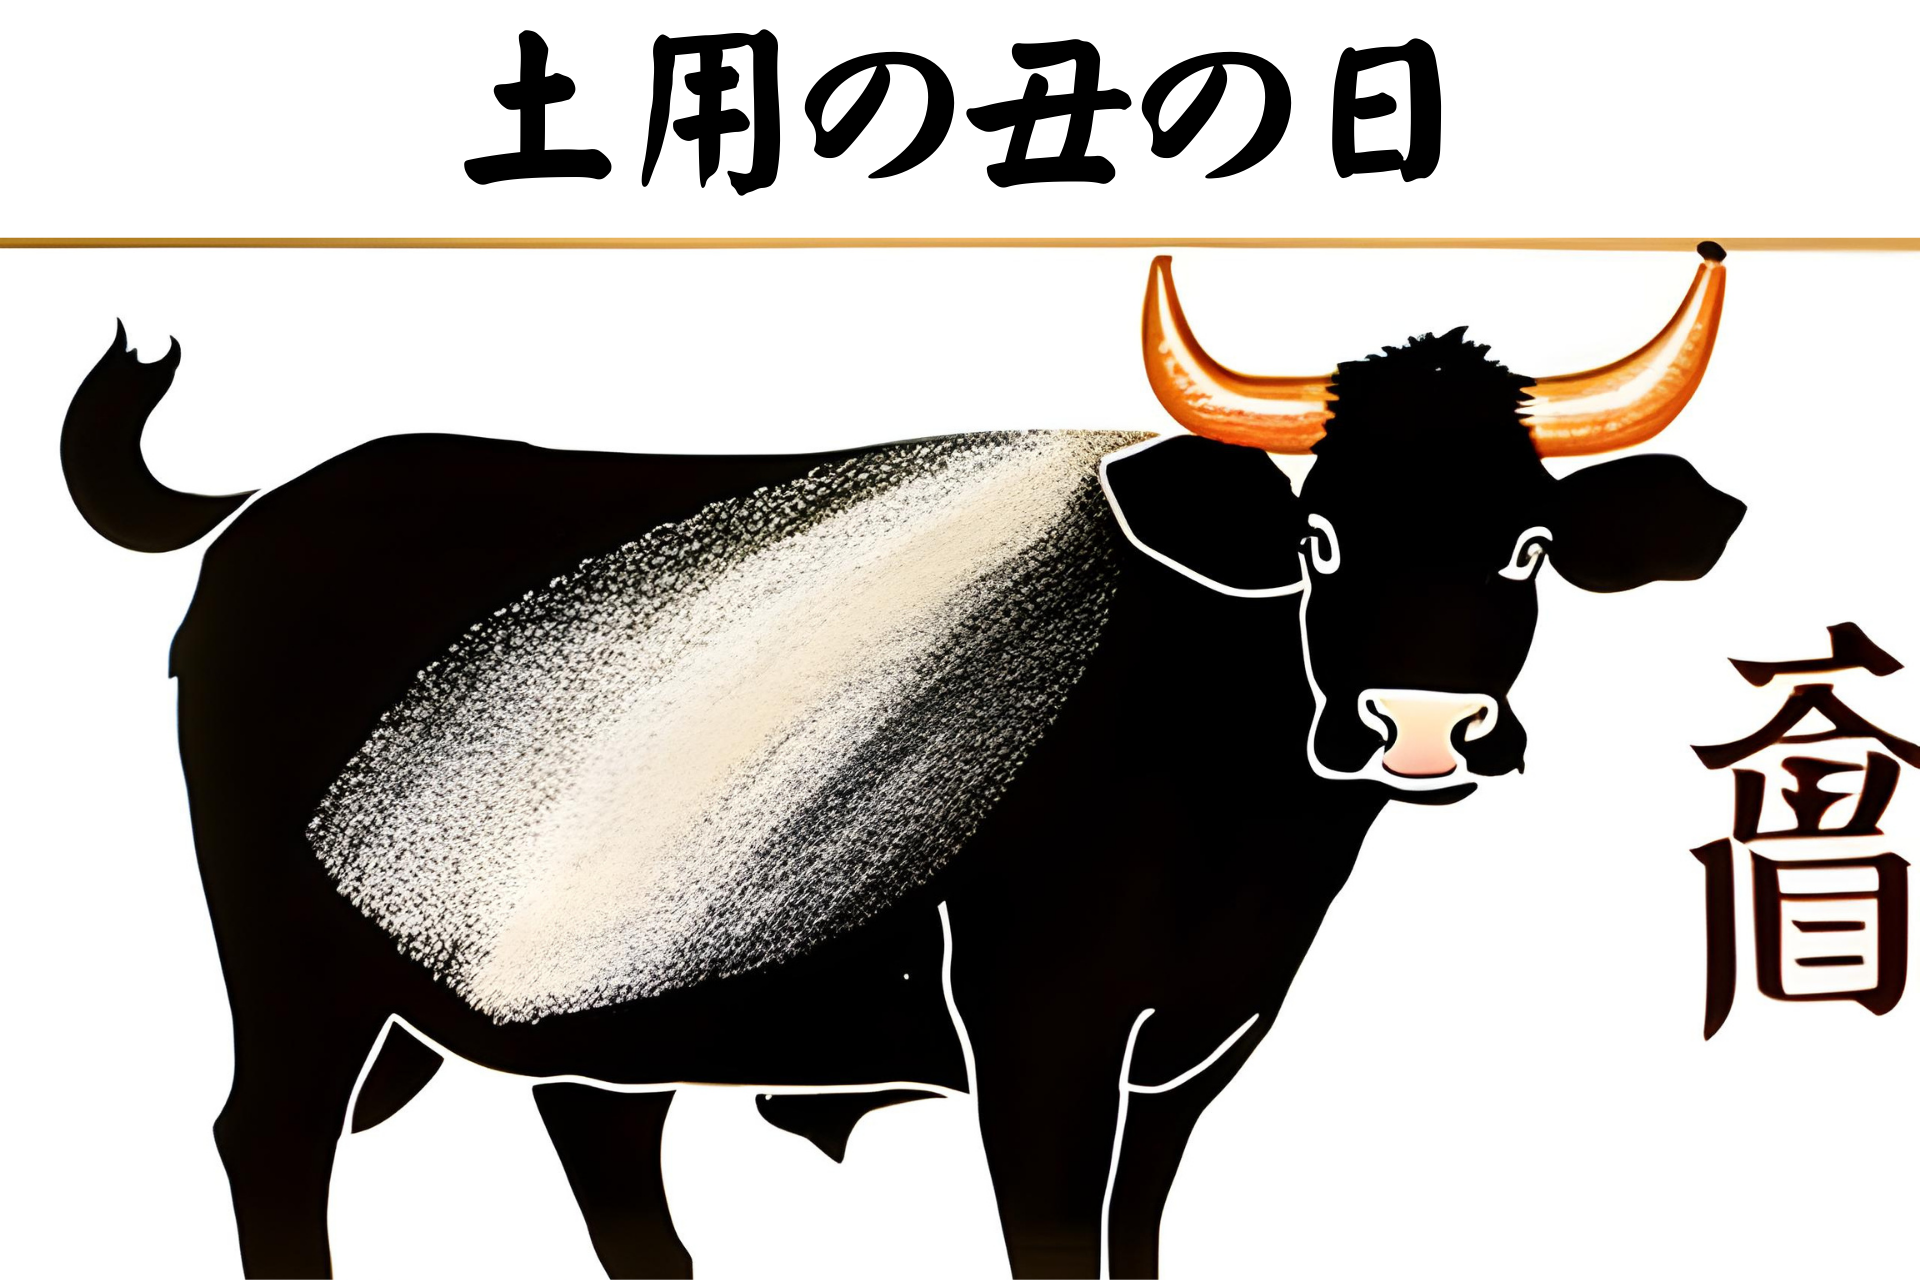 Koe die onder de kanji staat土用の丑の日